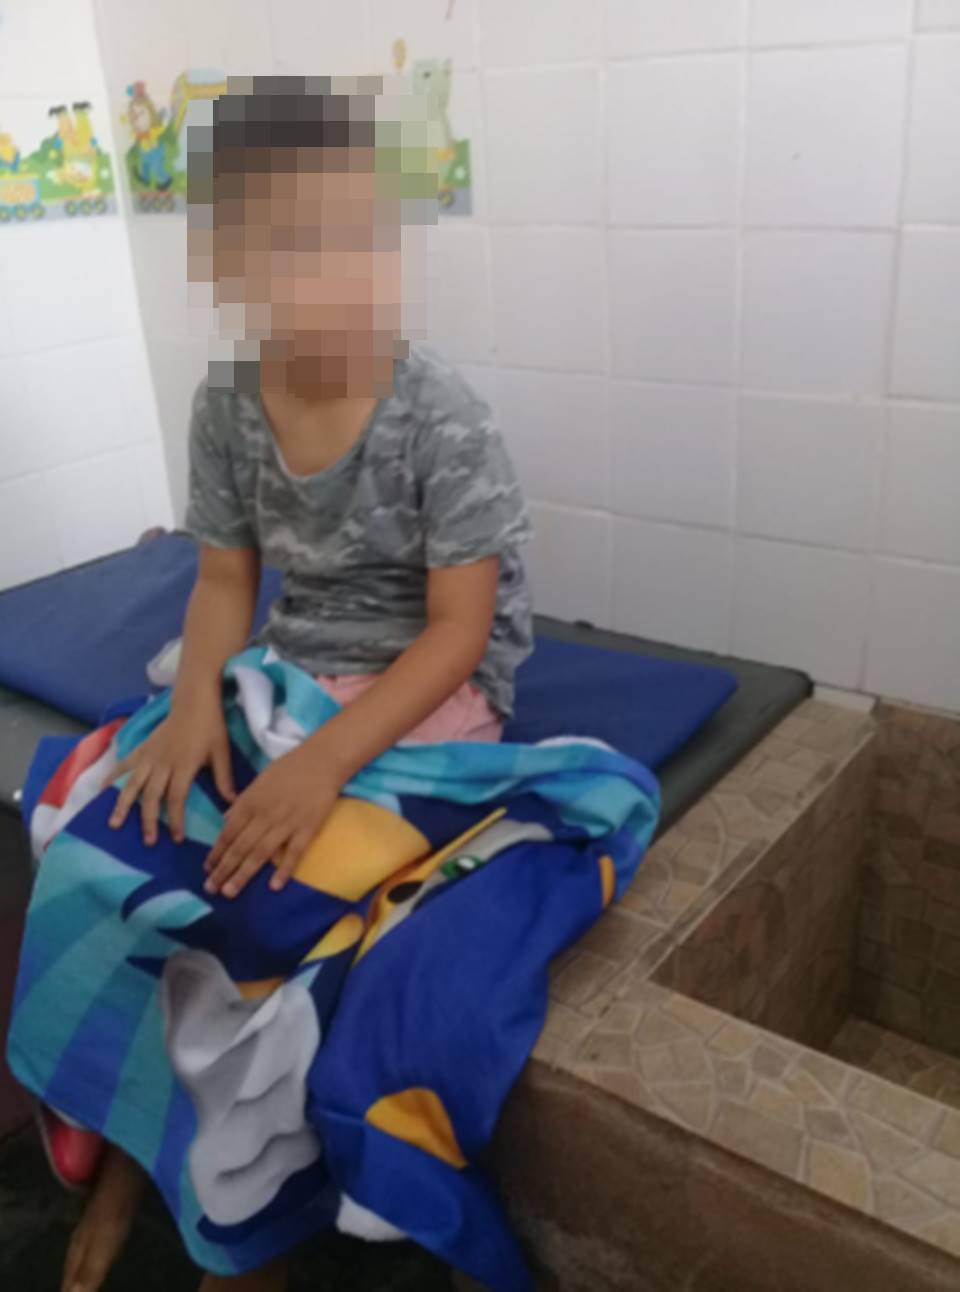 Criança autista gasta mais de €2800 em Roblox sem a mãe saber